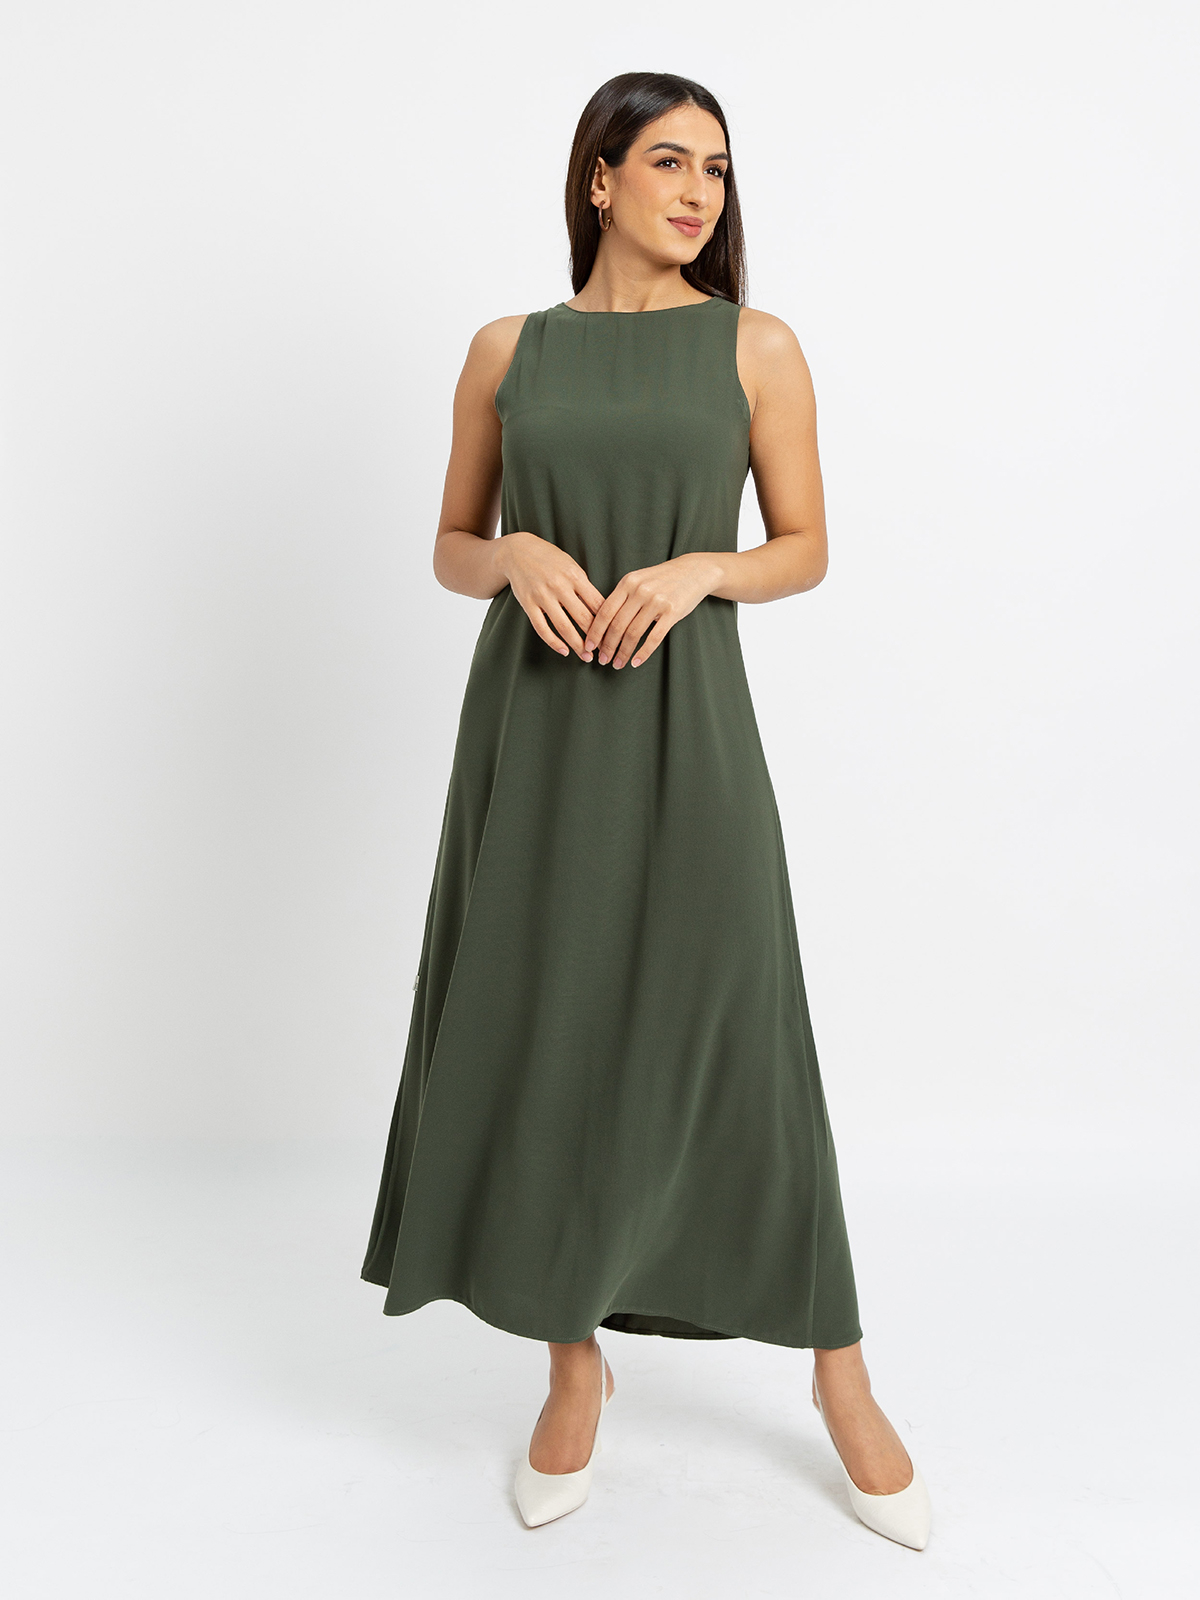 Olive - Light Sleeveless Long Dress